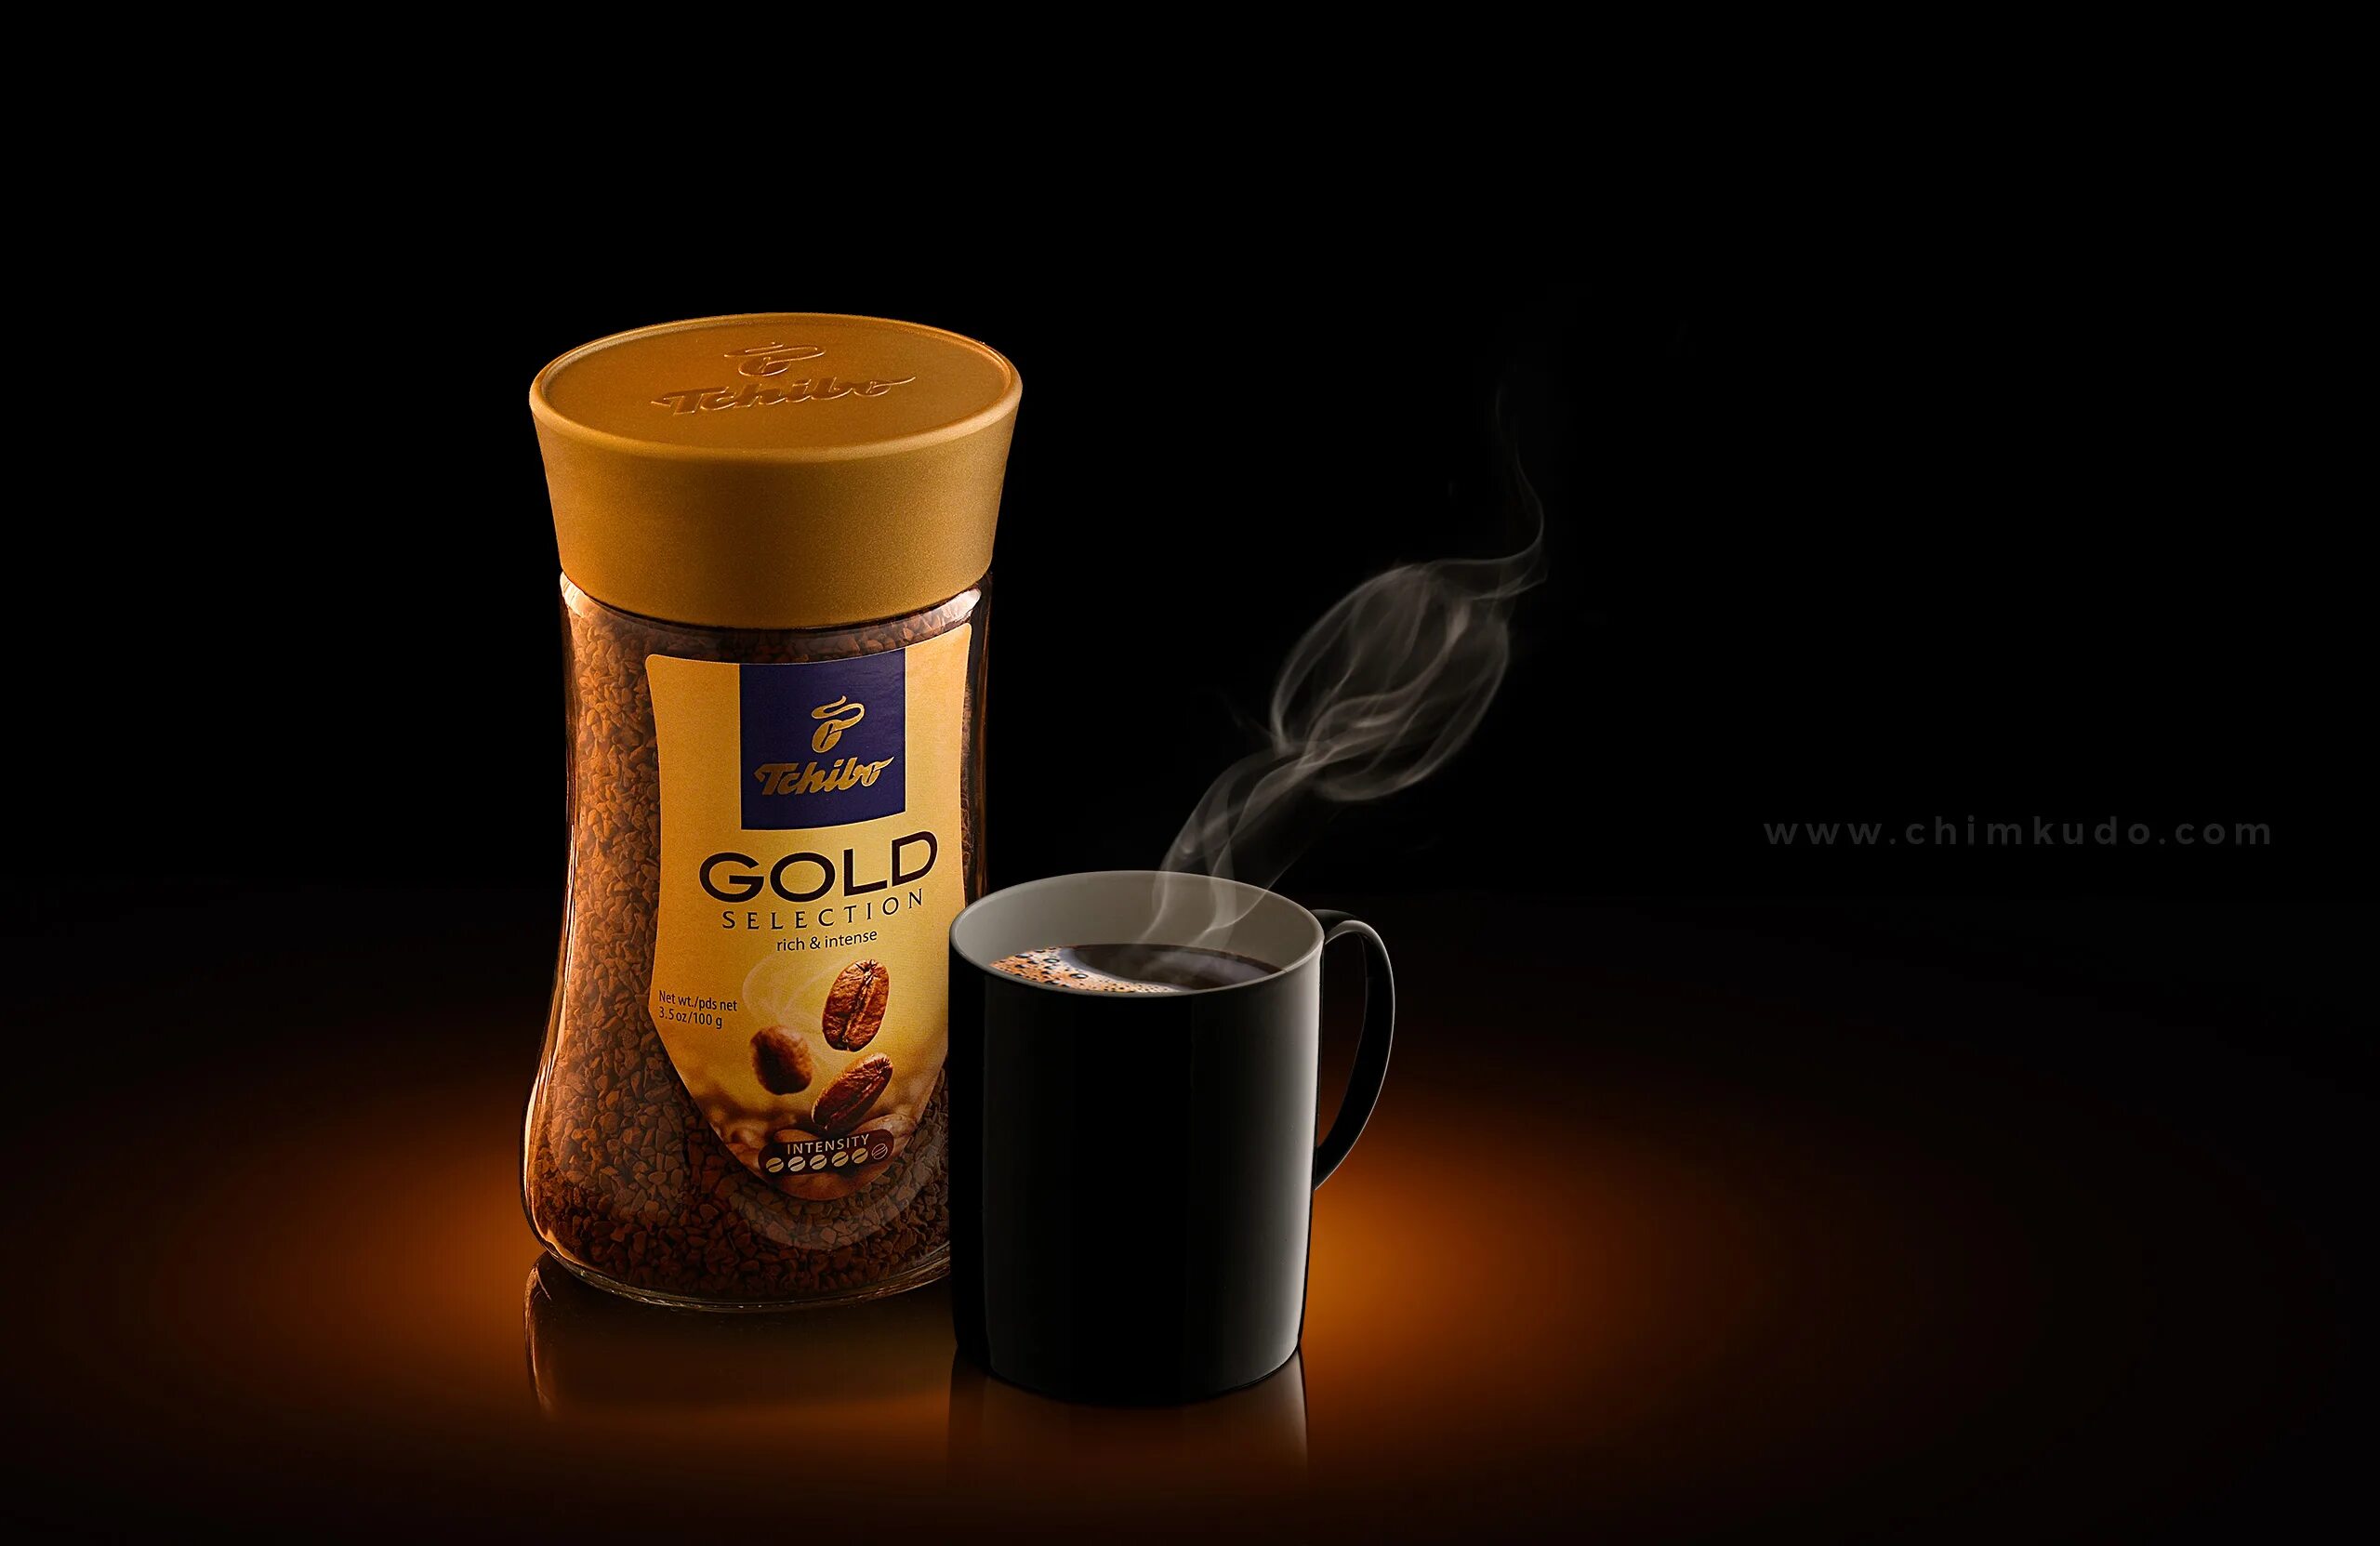 Рекламирует кофе. Кофе Tchibo Gold. Реклама кофе. Креативная реклама кофе. Реклама кафt.